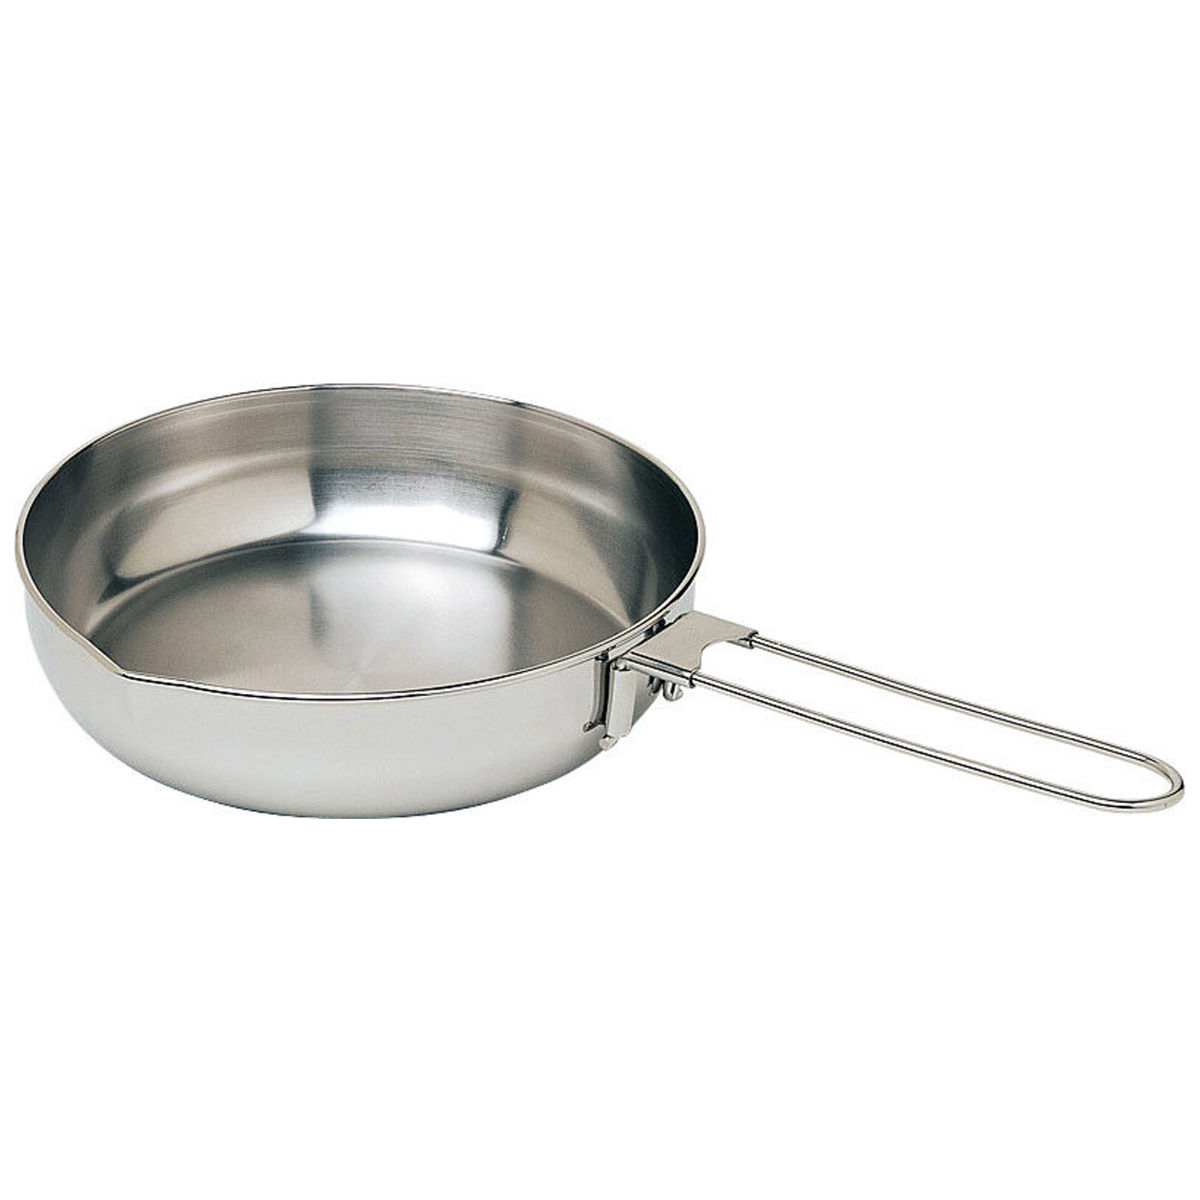 MSR Alpine stainless steel fry pan